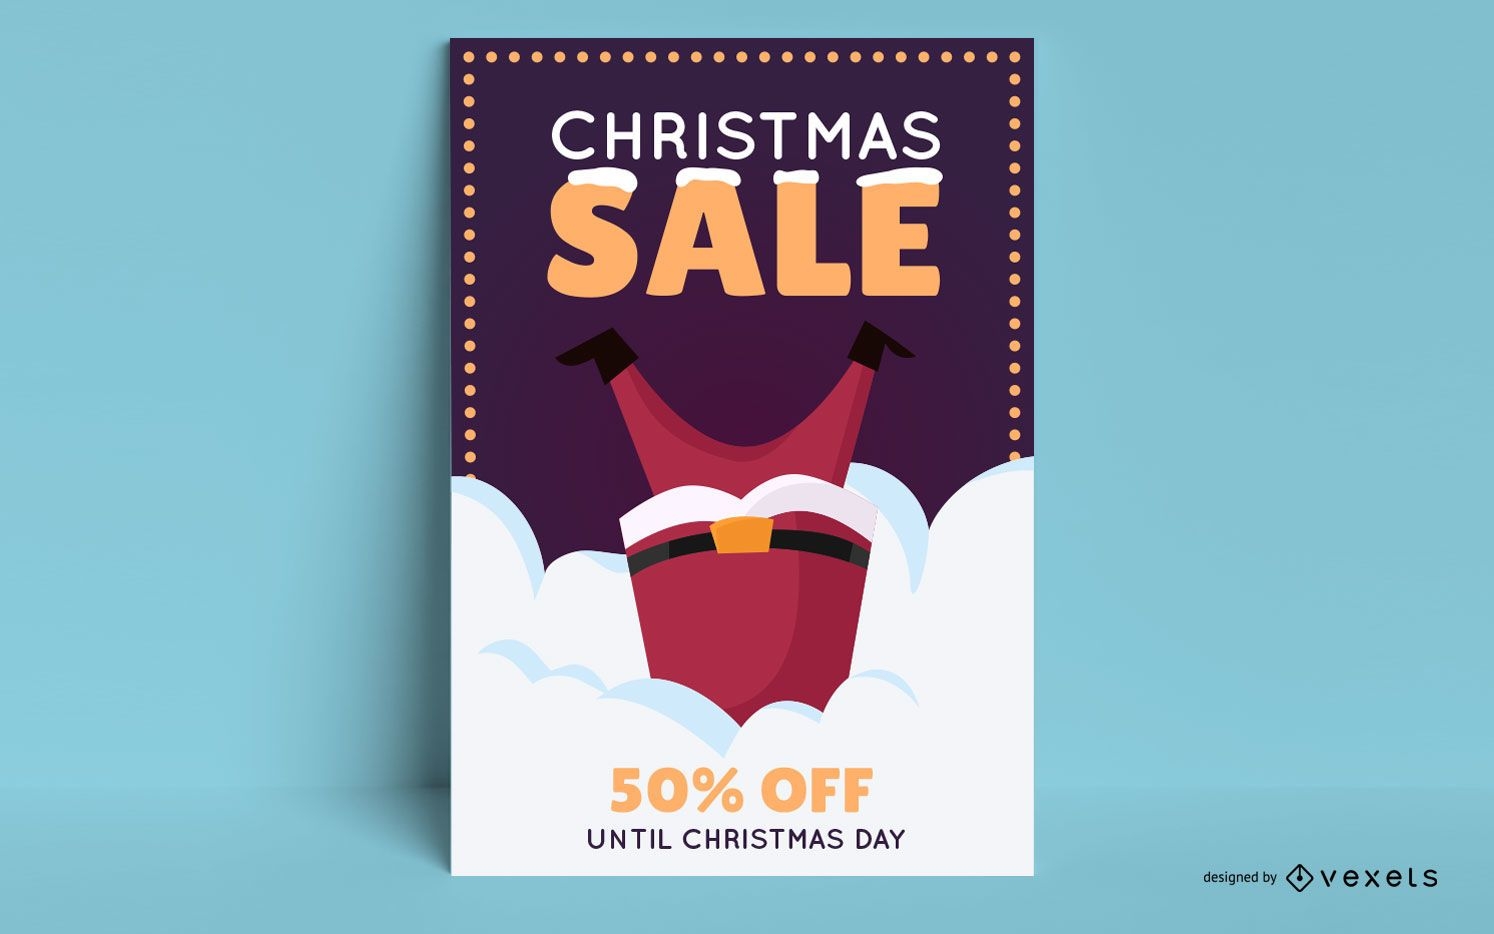 Christmas sale editable poster